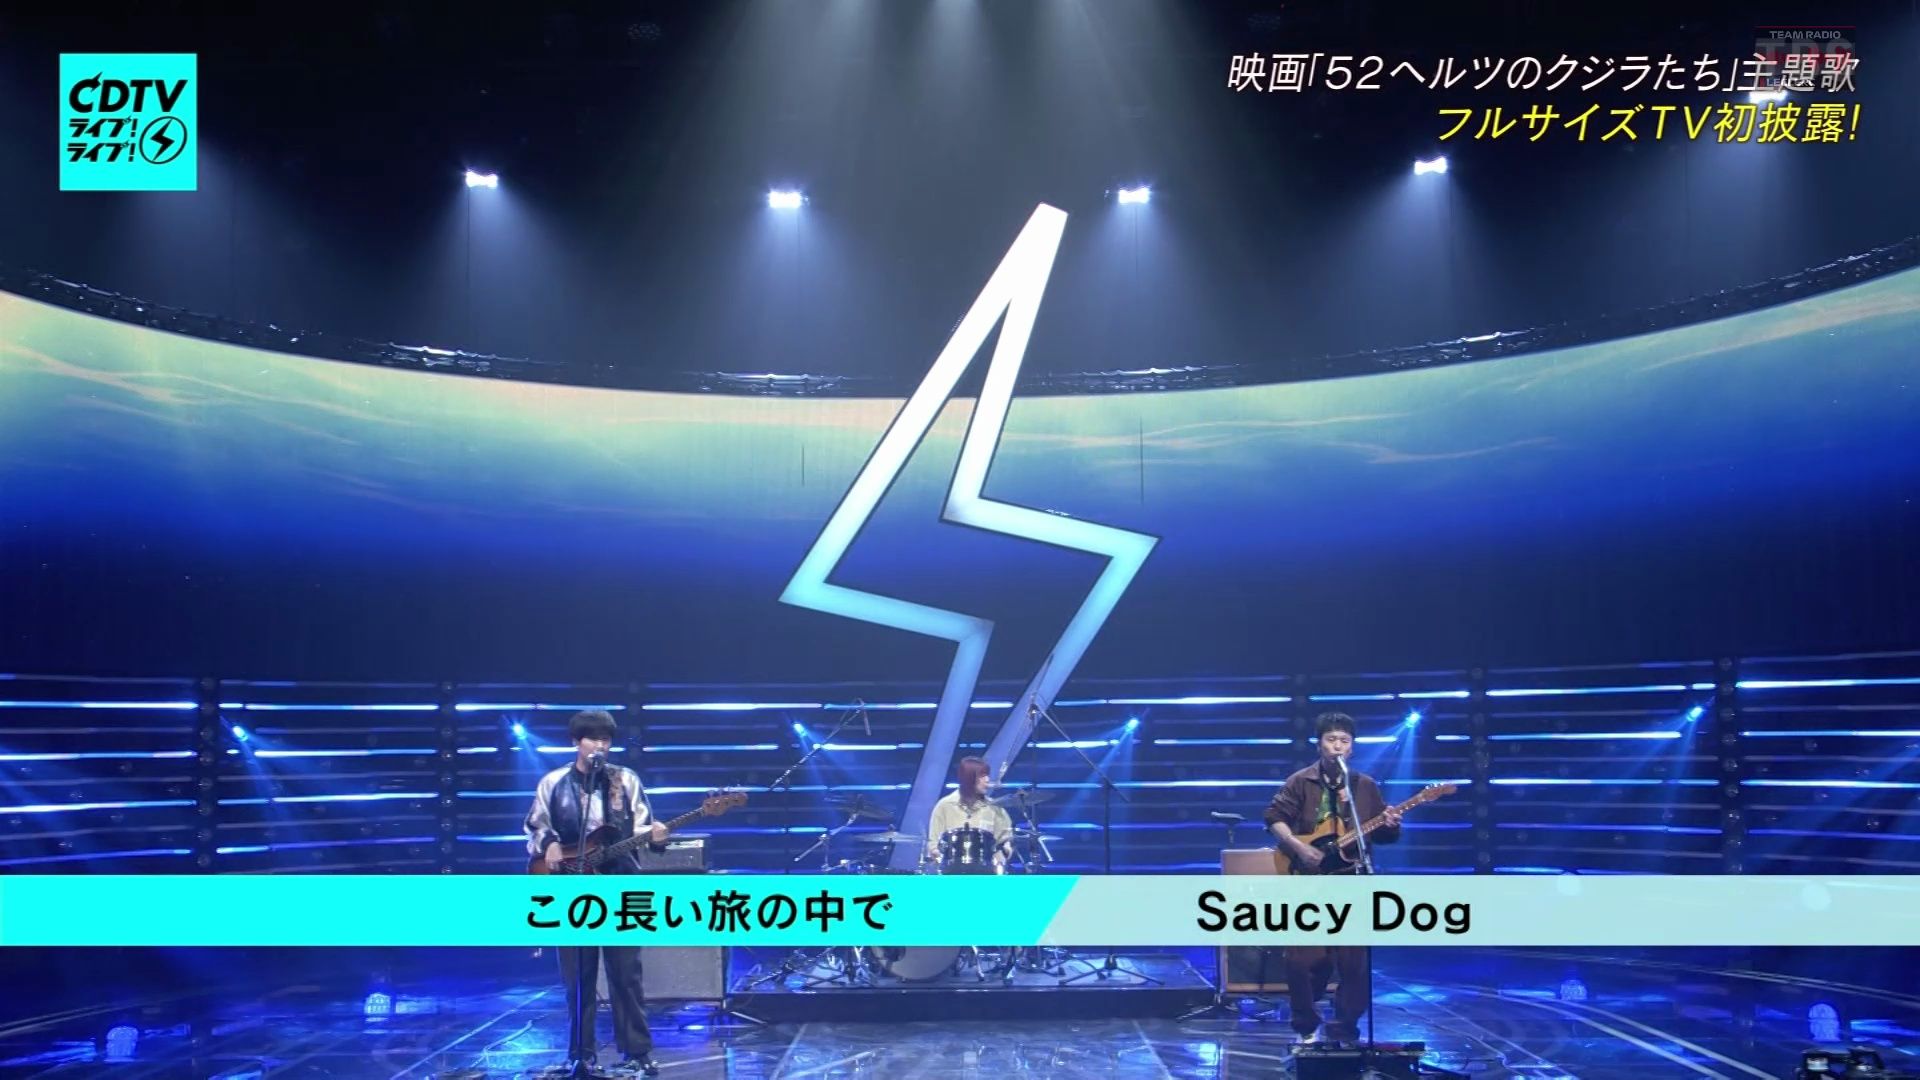 【Live】Saucy Dog「この長い旅の中で」